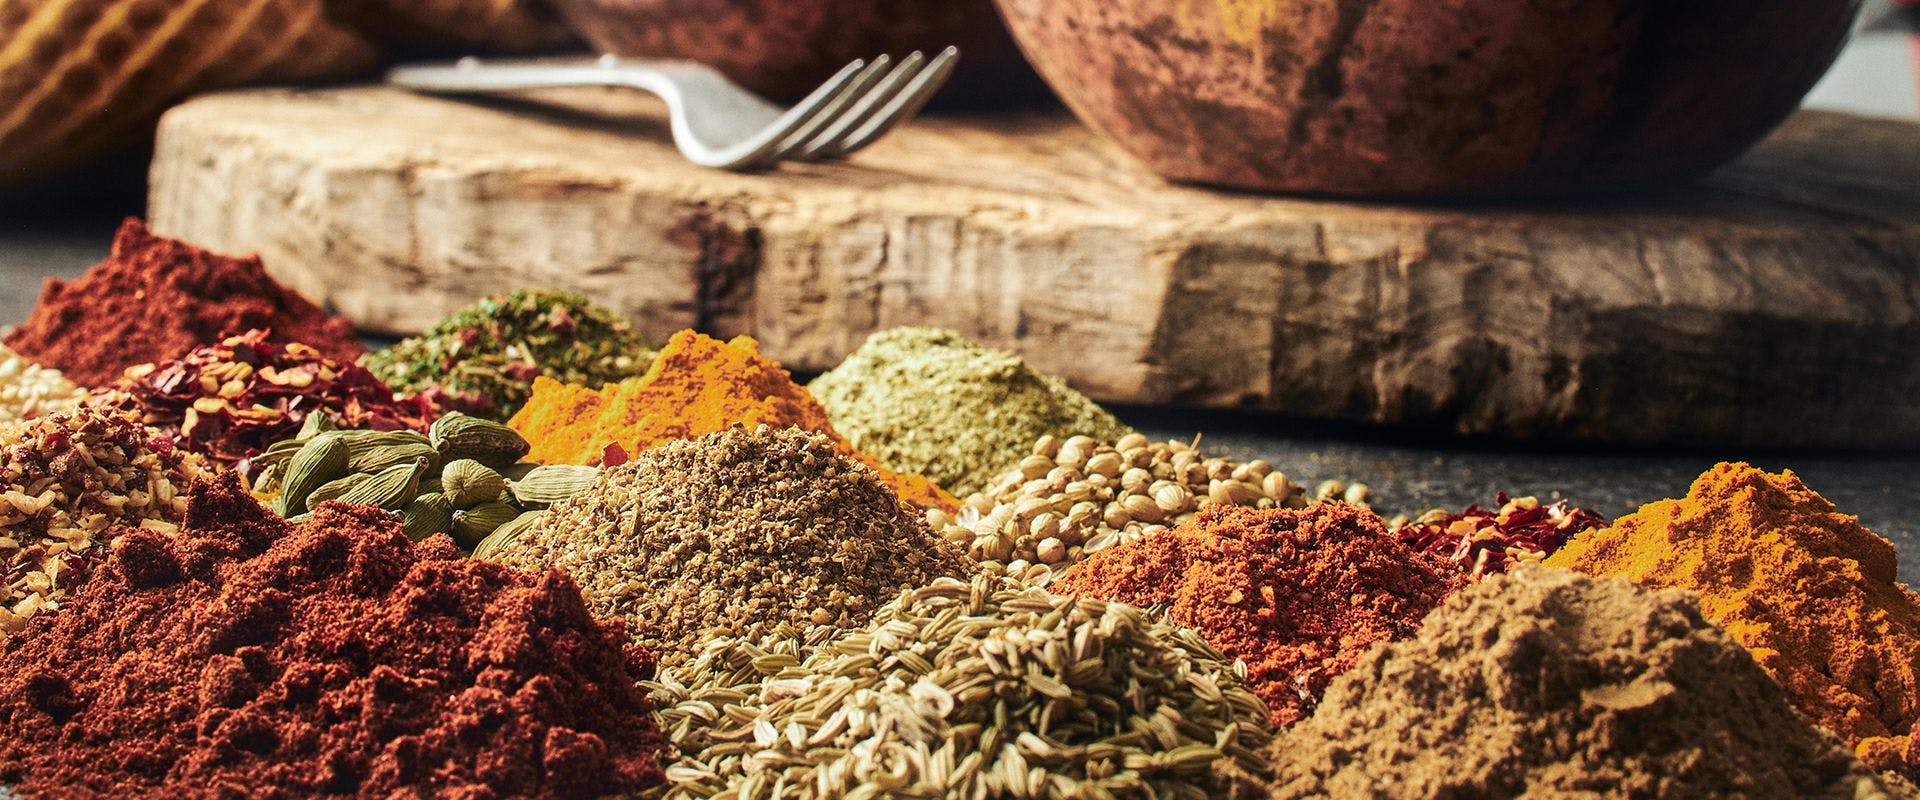 Curry, koriander, chili och andra indiska kryddor